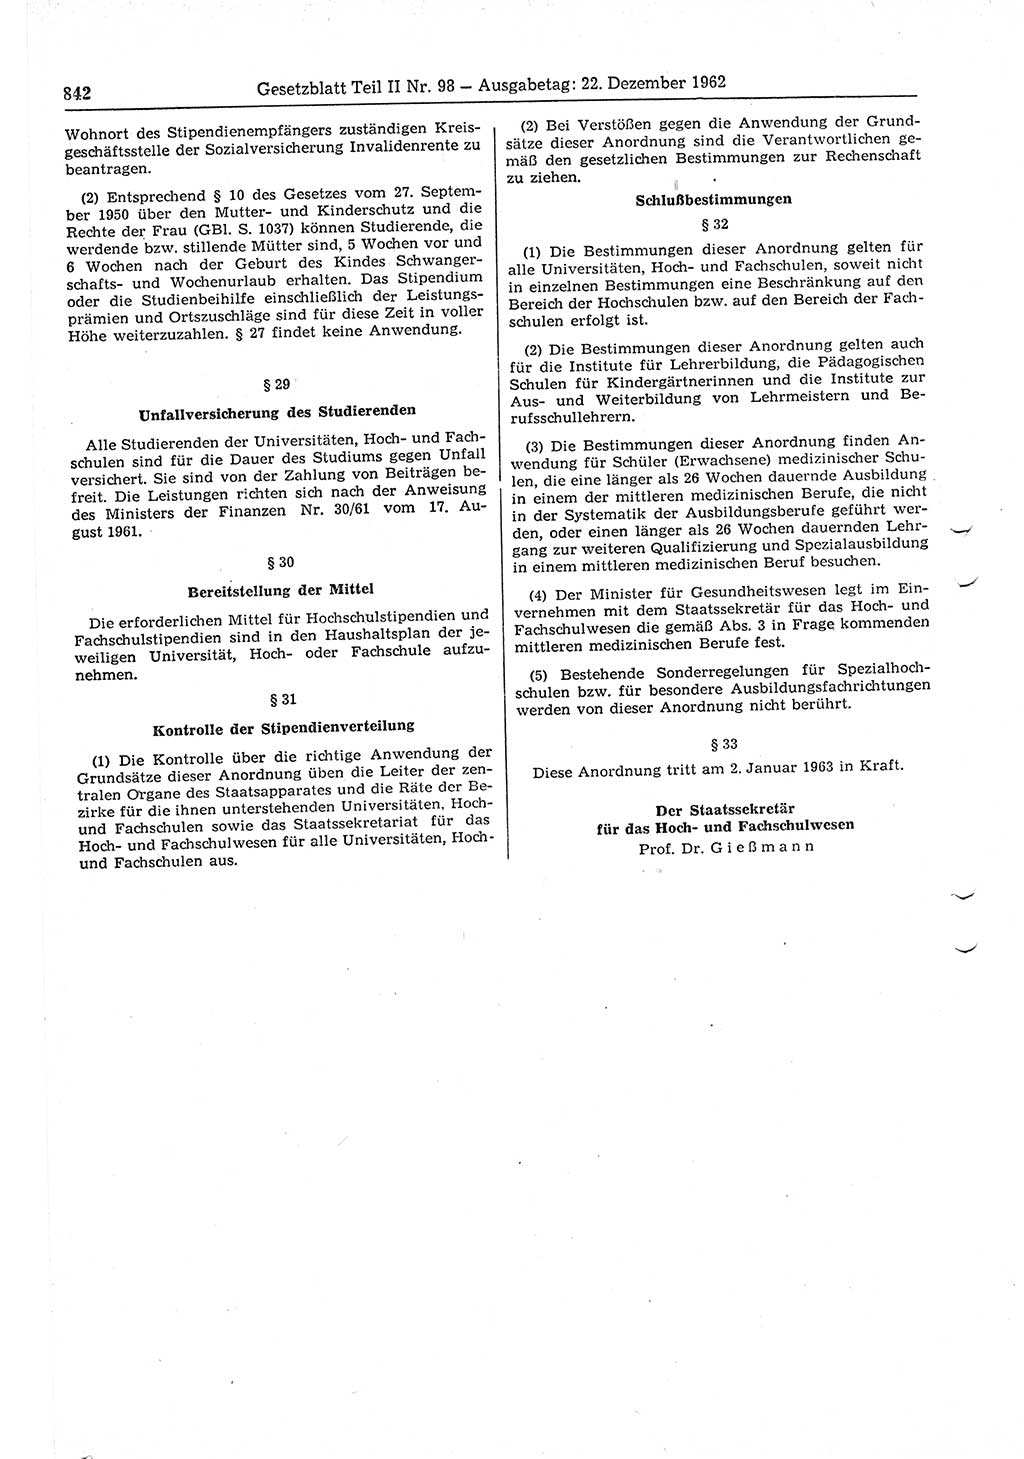 Gesetzblatt (GBl.) der Deutschen Demokratischen Republik (DDR) Teil ⅠⅠ 1962, Seite 842 (GBl. DDR ⅠⅠ 1962, S. 842)